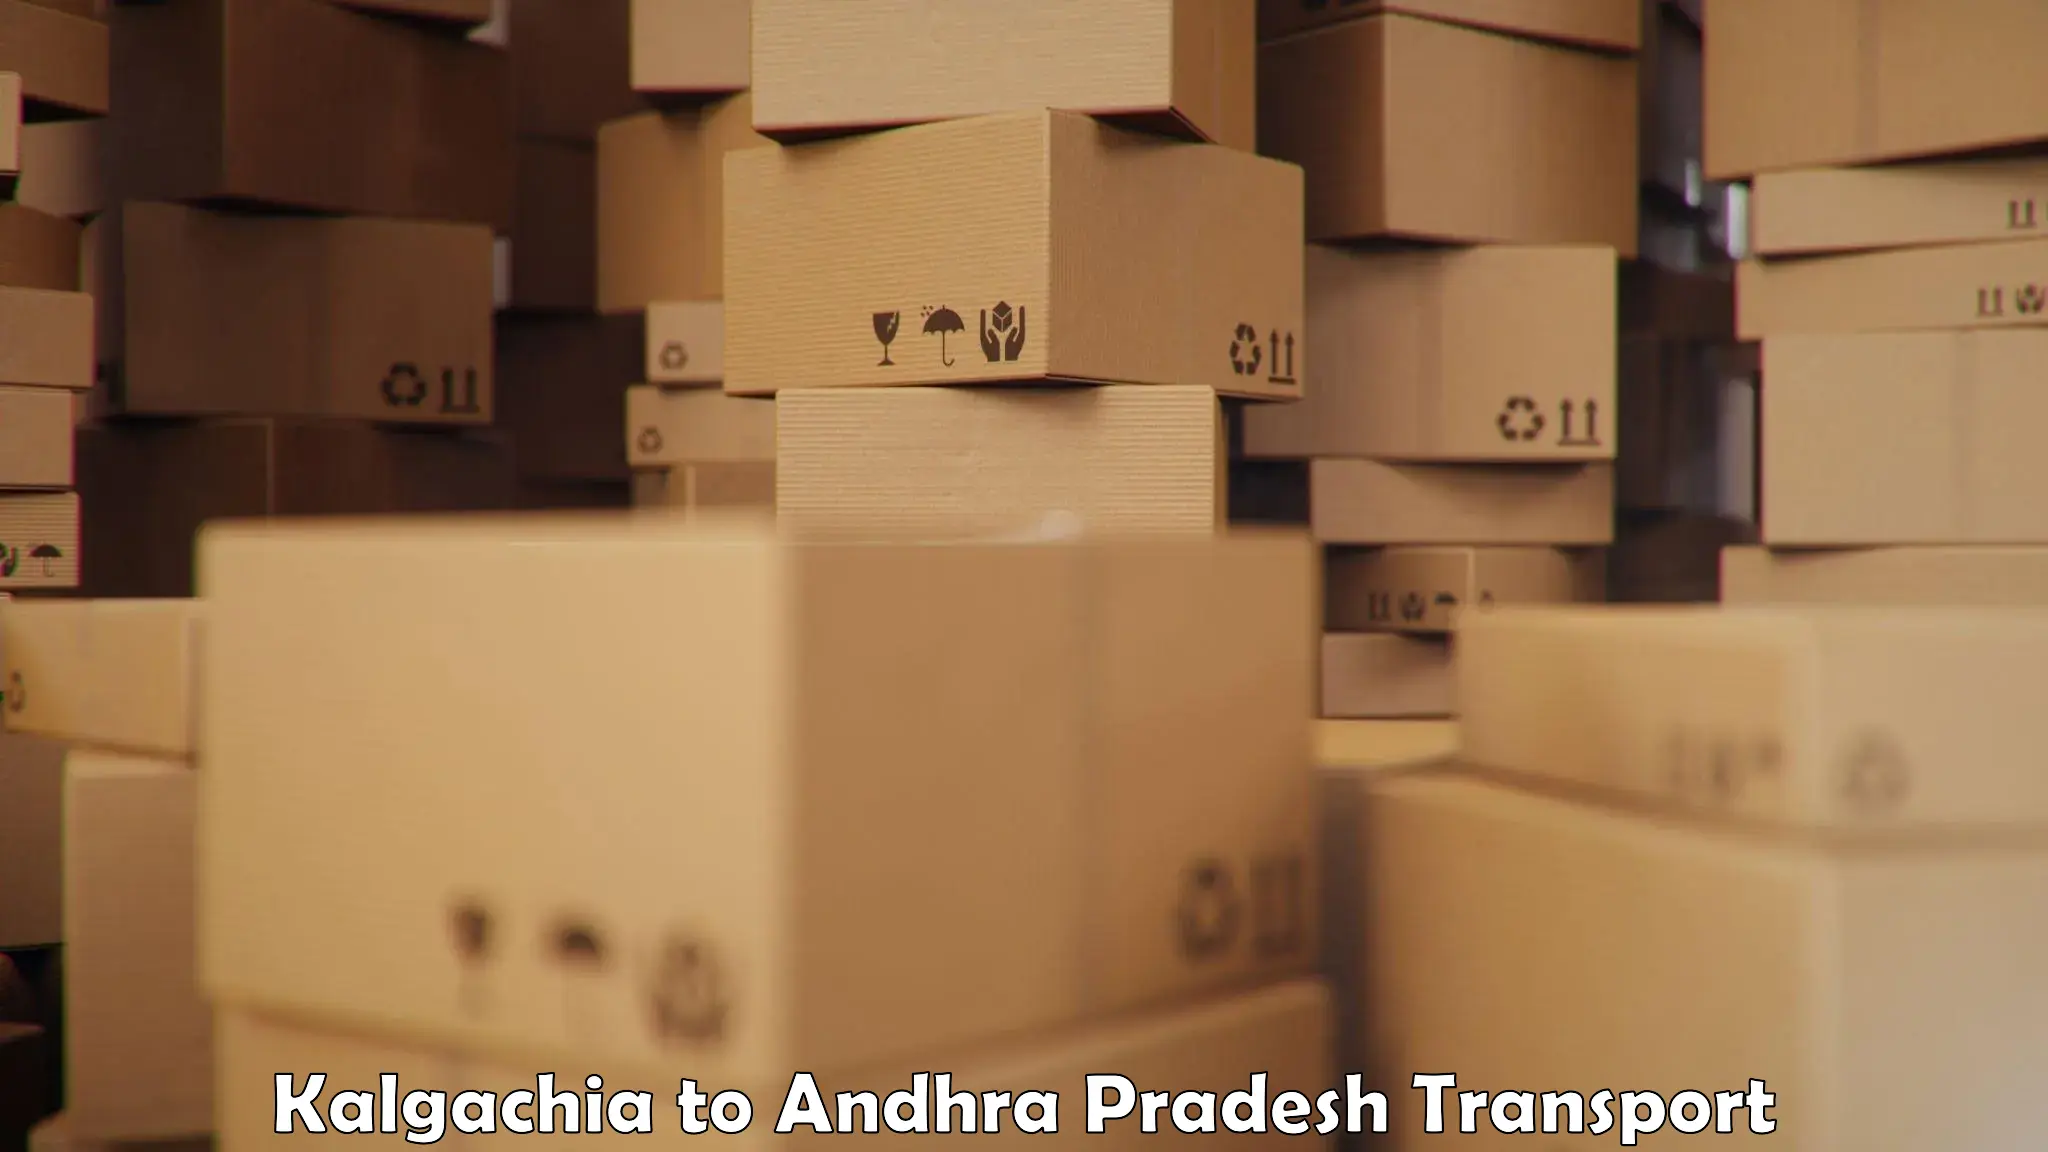 Air freight transport services Kalgachia to Andhra Pradesh